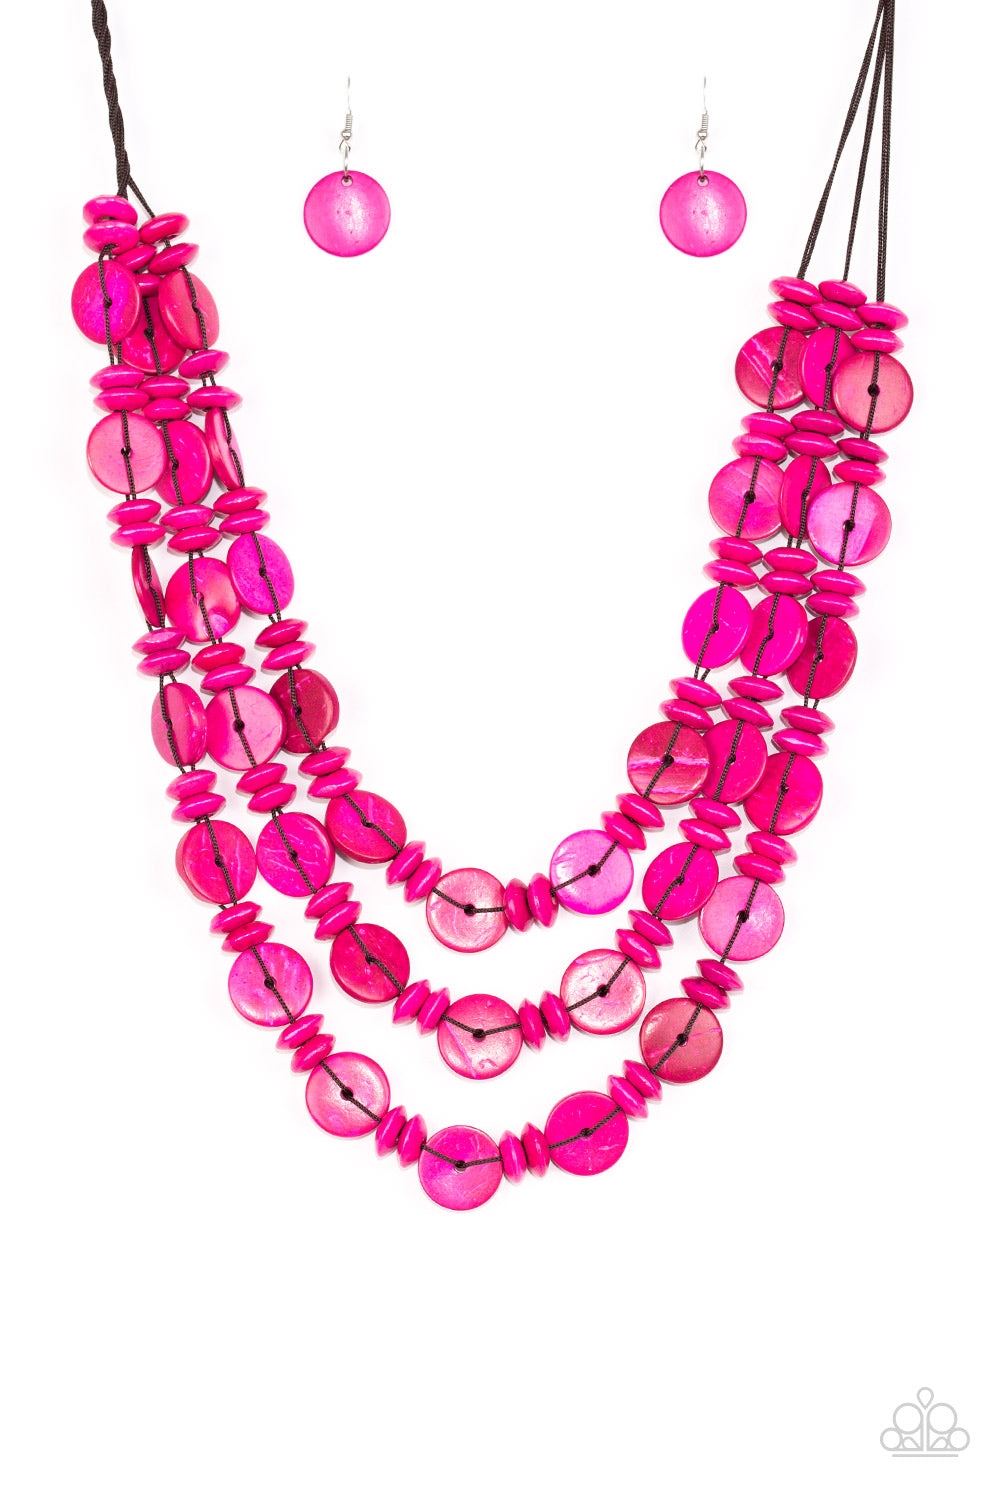 Barbados Bopper - Pink Necklace